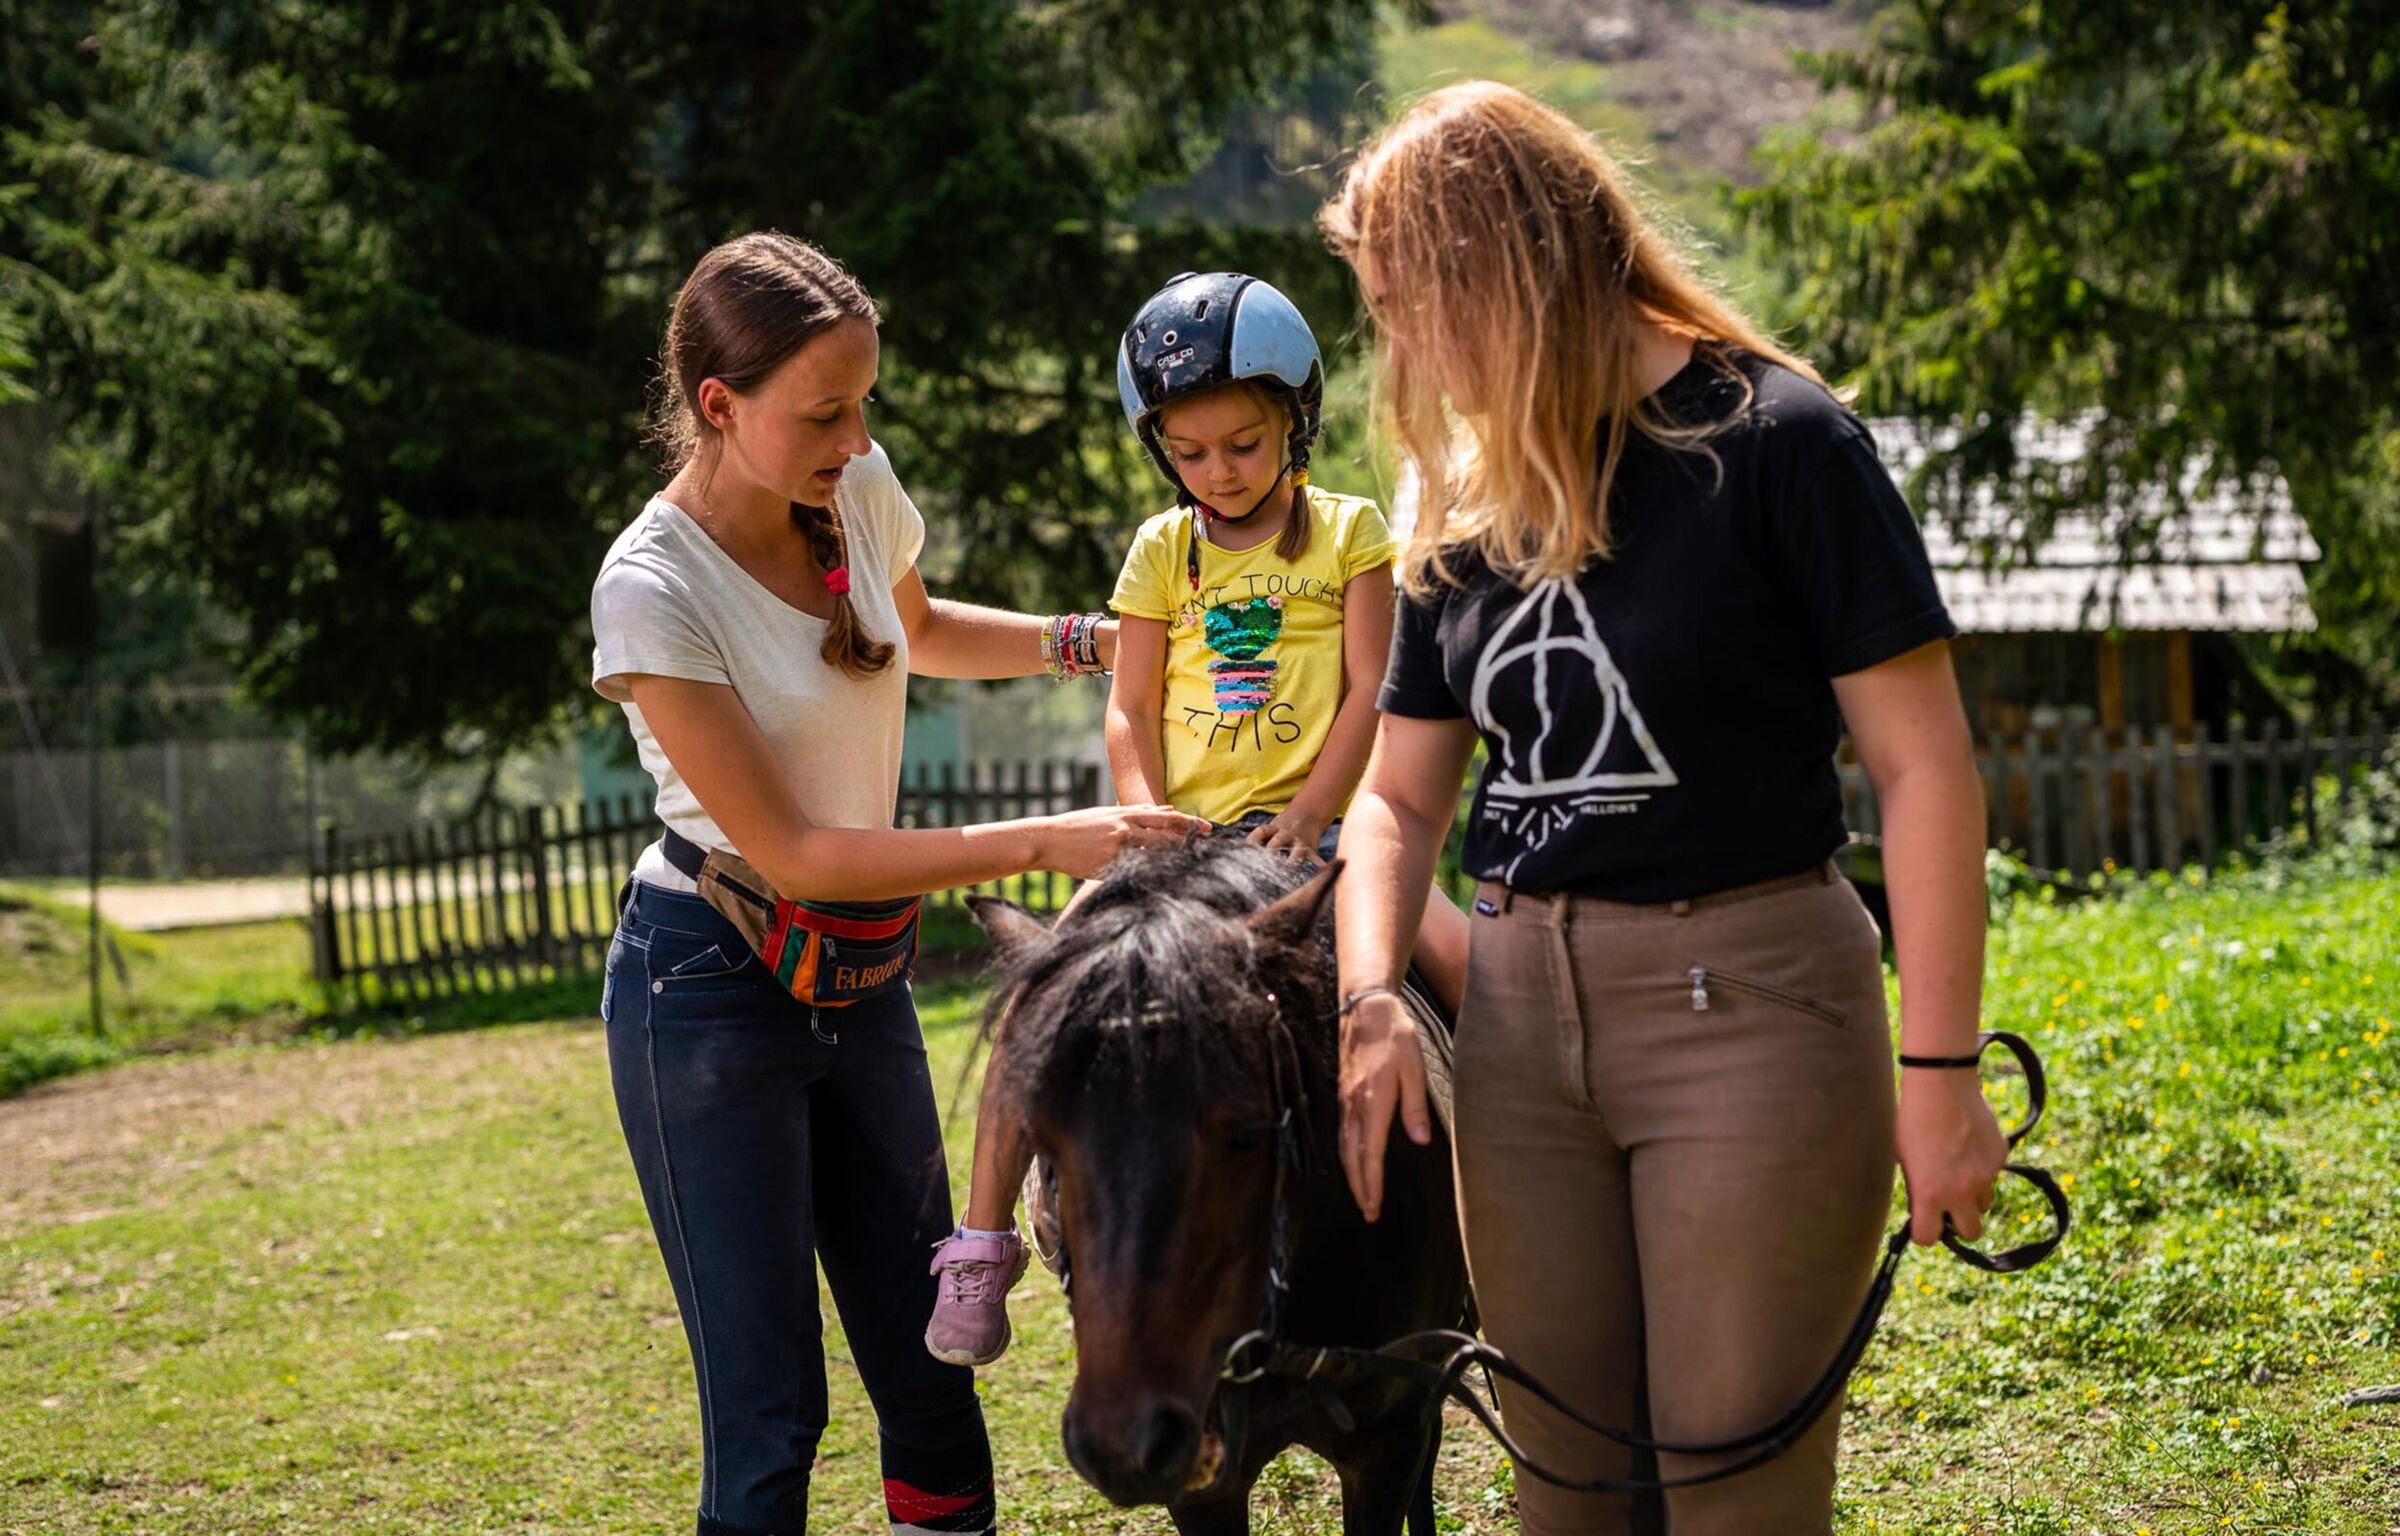 Una bambina con l'elmetto siede su un pony scuro ed è sorretta da una donna